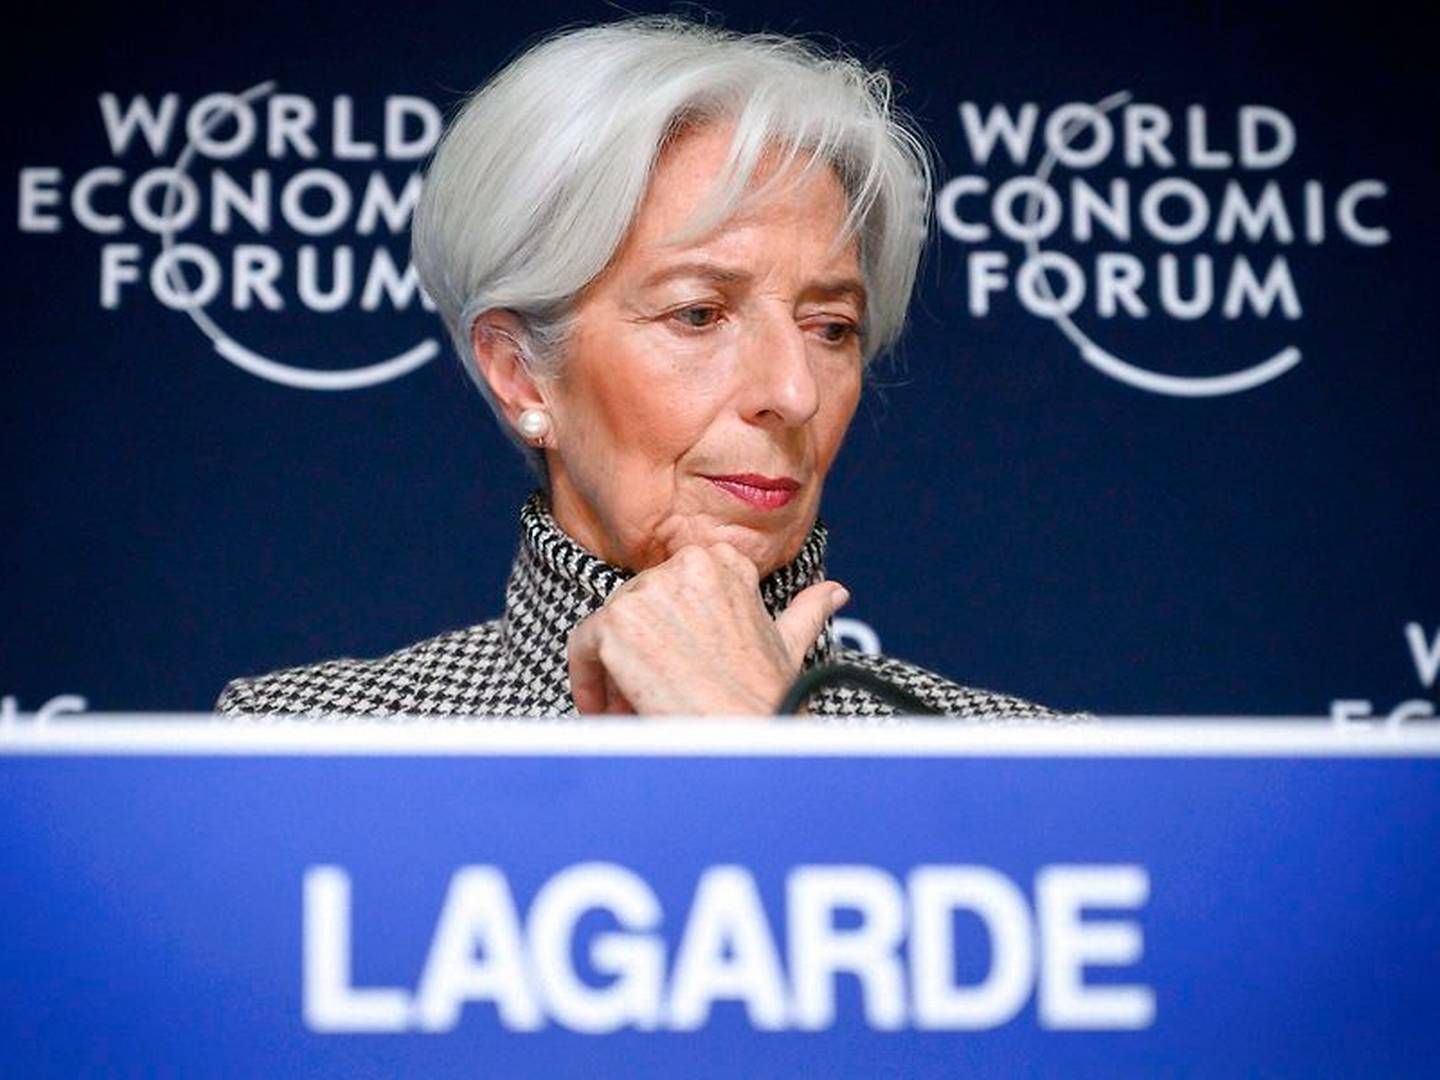 Direktøren for Den Internationale Valutafond (IMF), Christine Legarde, har præsenteret IMF's nedjustering af den forventede vækst. | Foto: Ritzau Scanpiz/AFP/Fabrice Coffrini